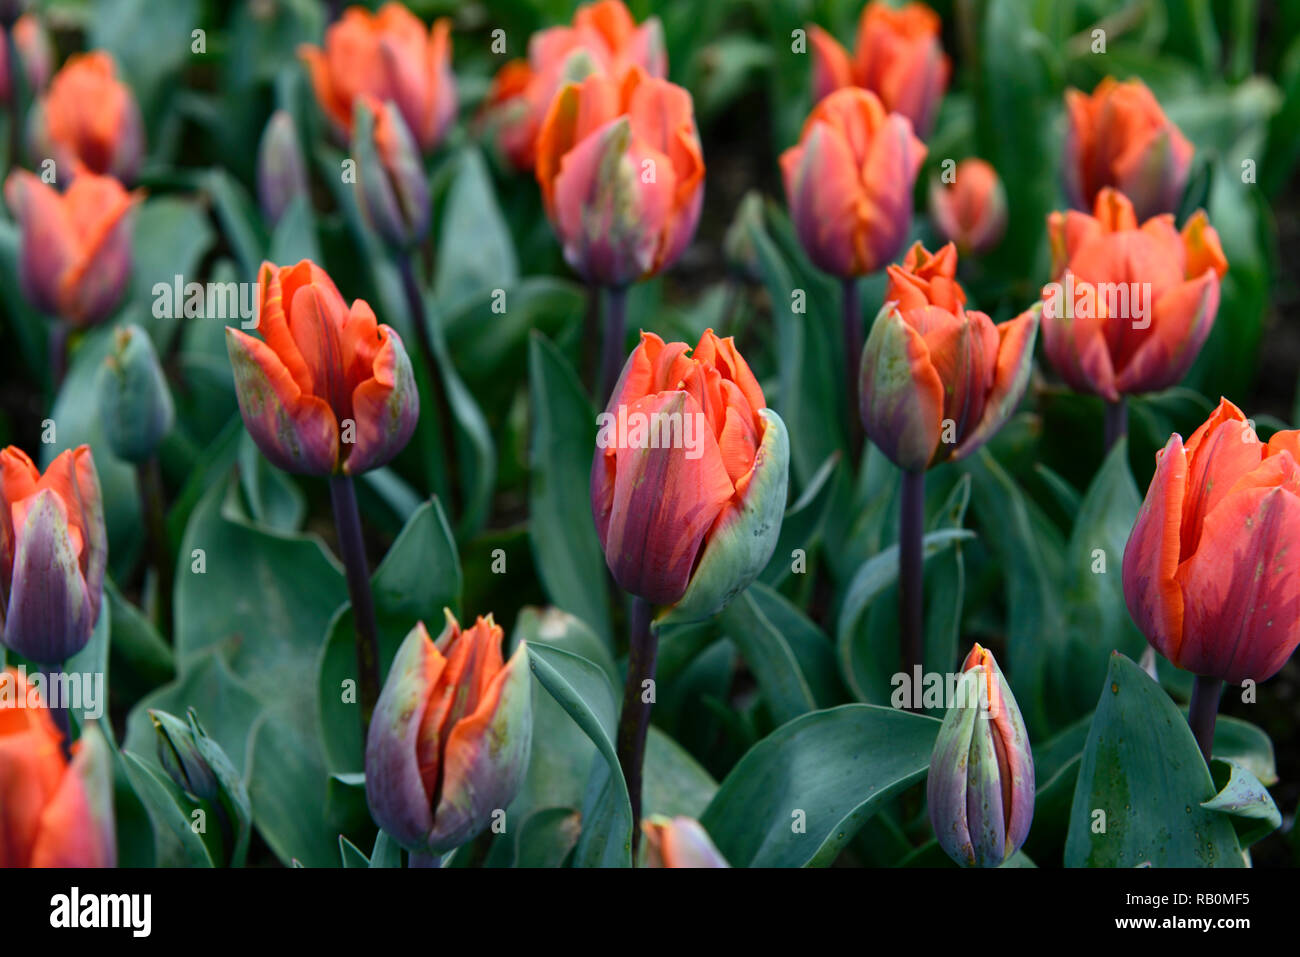 Tulipa principessa Irene,tulip principessa Irene,viola,arancione,bicolor,unico inizio tulip,tulipani,fiore,fiori,giardino,RM Floral Foto Stock